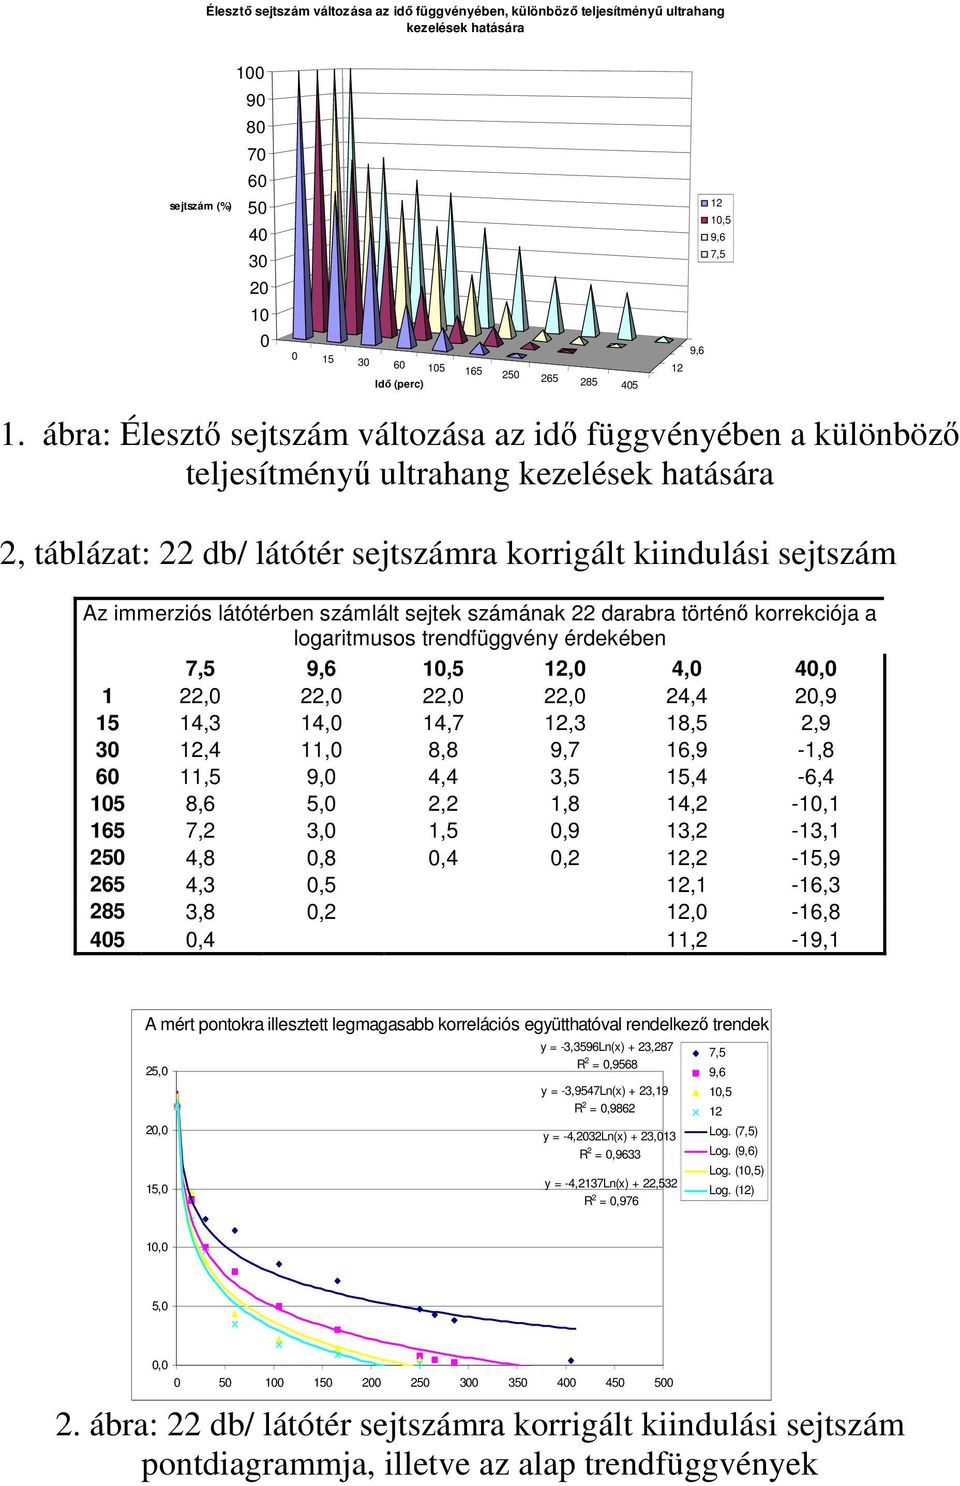 ábra: Élesztı sejtszám változása az idı függvényében a különbözı teljesítményő ultrahang kezelések hatására 2, táblázat: 22 db/ látótér sejtszámra korrigált kiindulási sejtszám Az immerziós